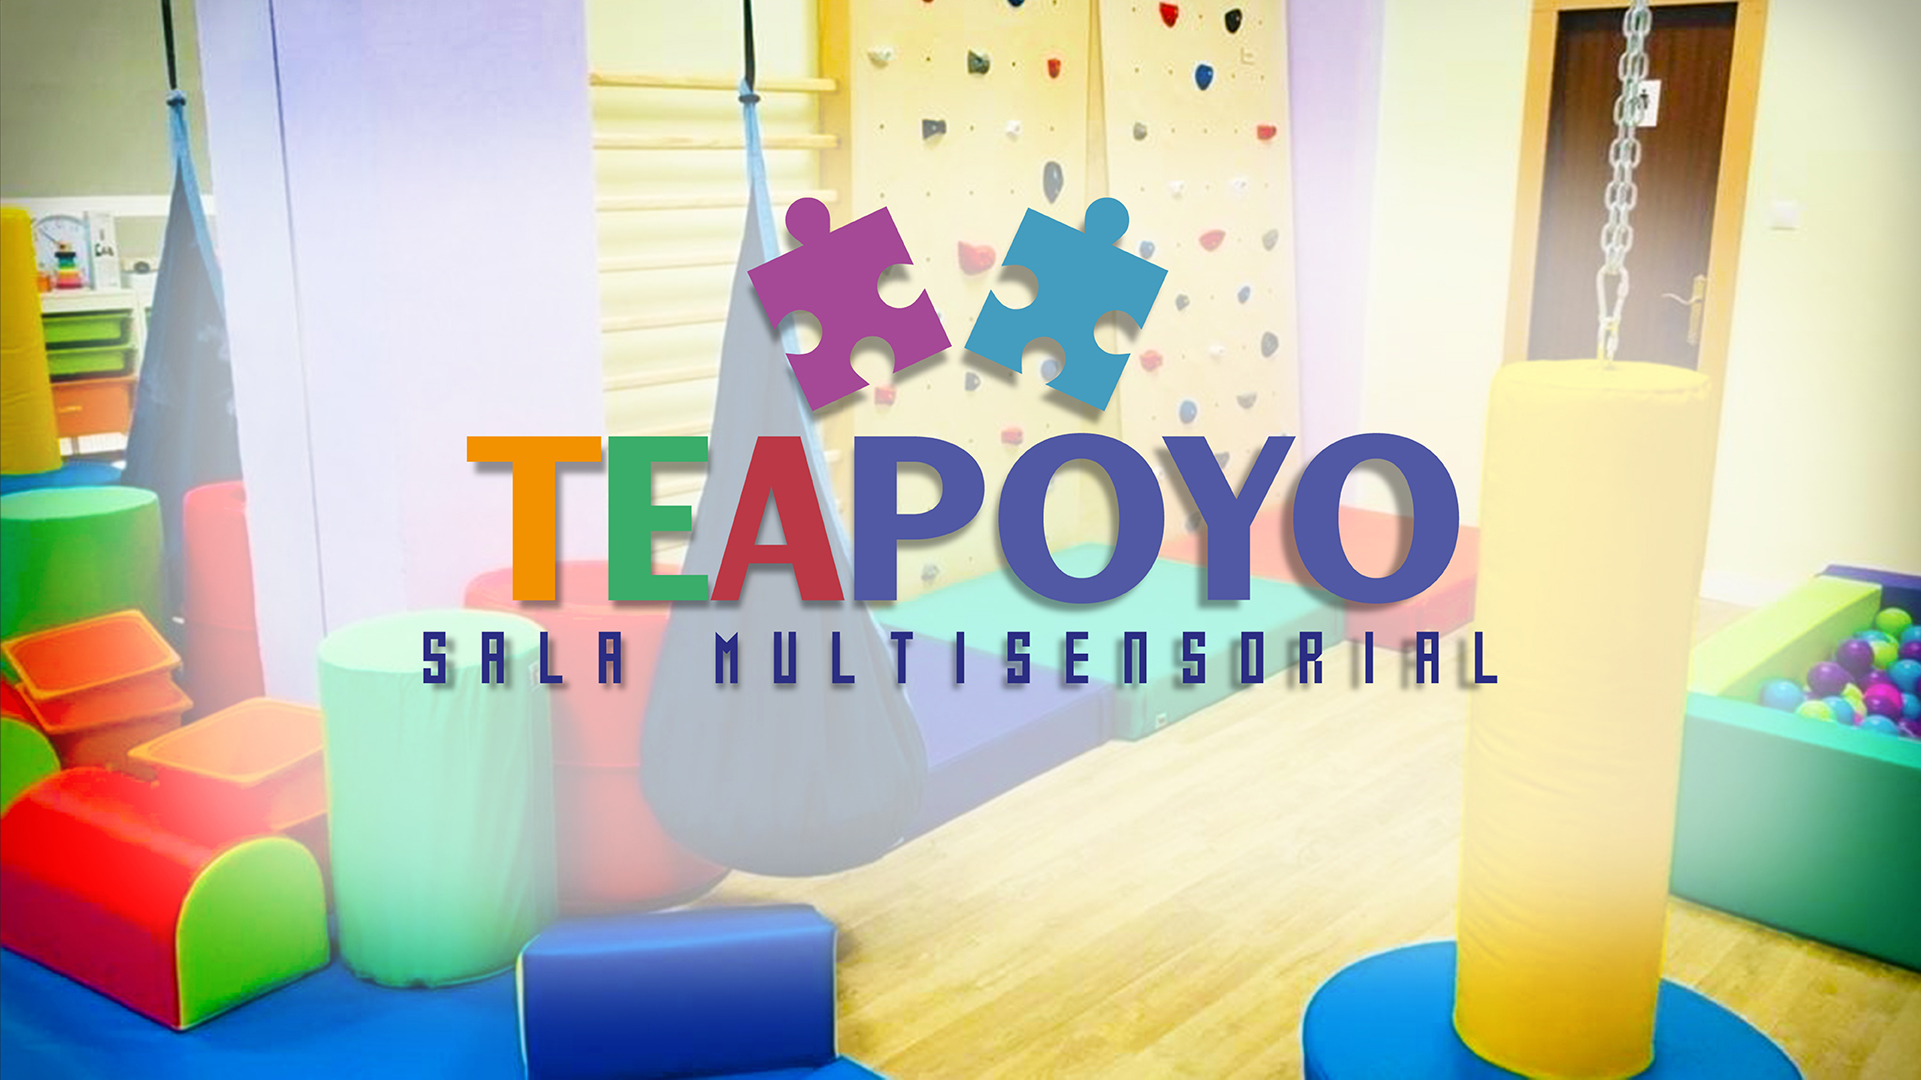 Proyecto TEAPOYO: Salas Multisensoriales